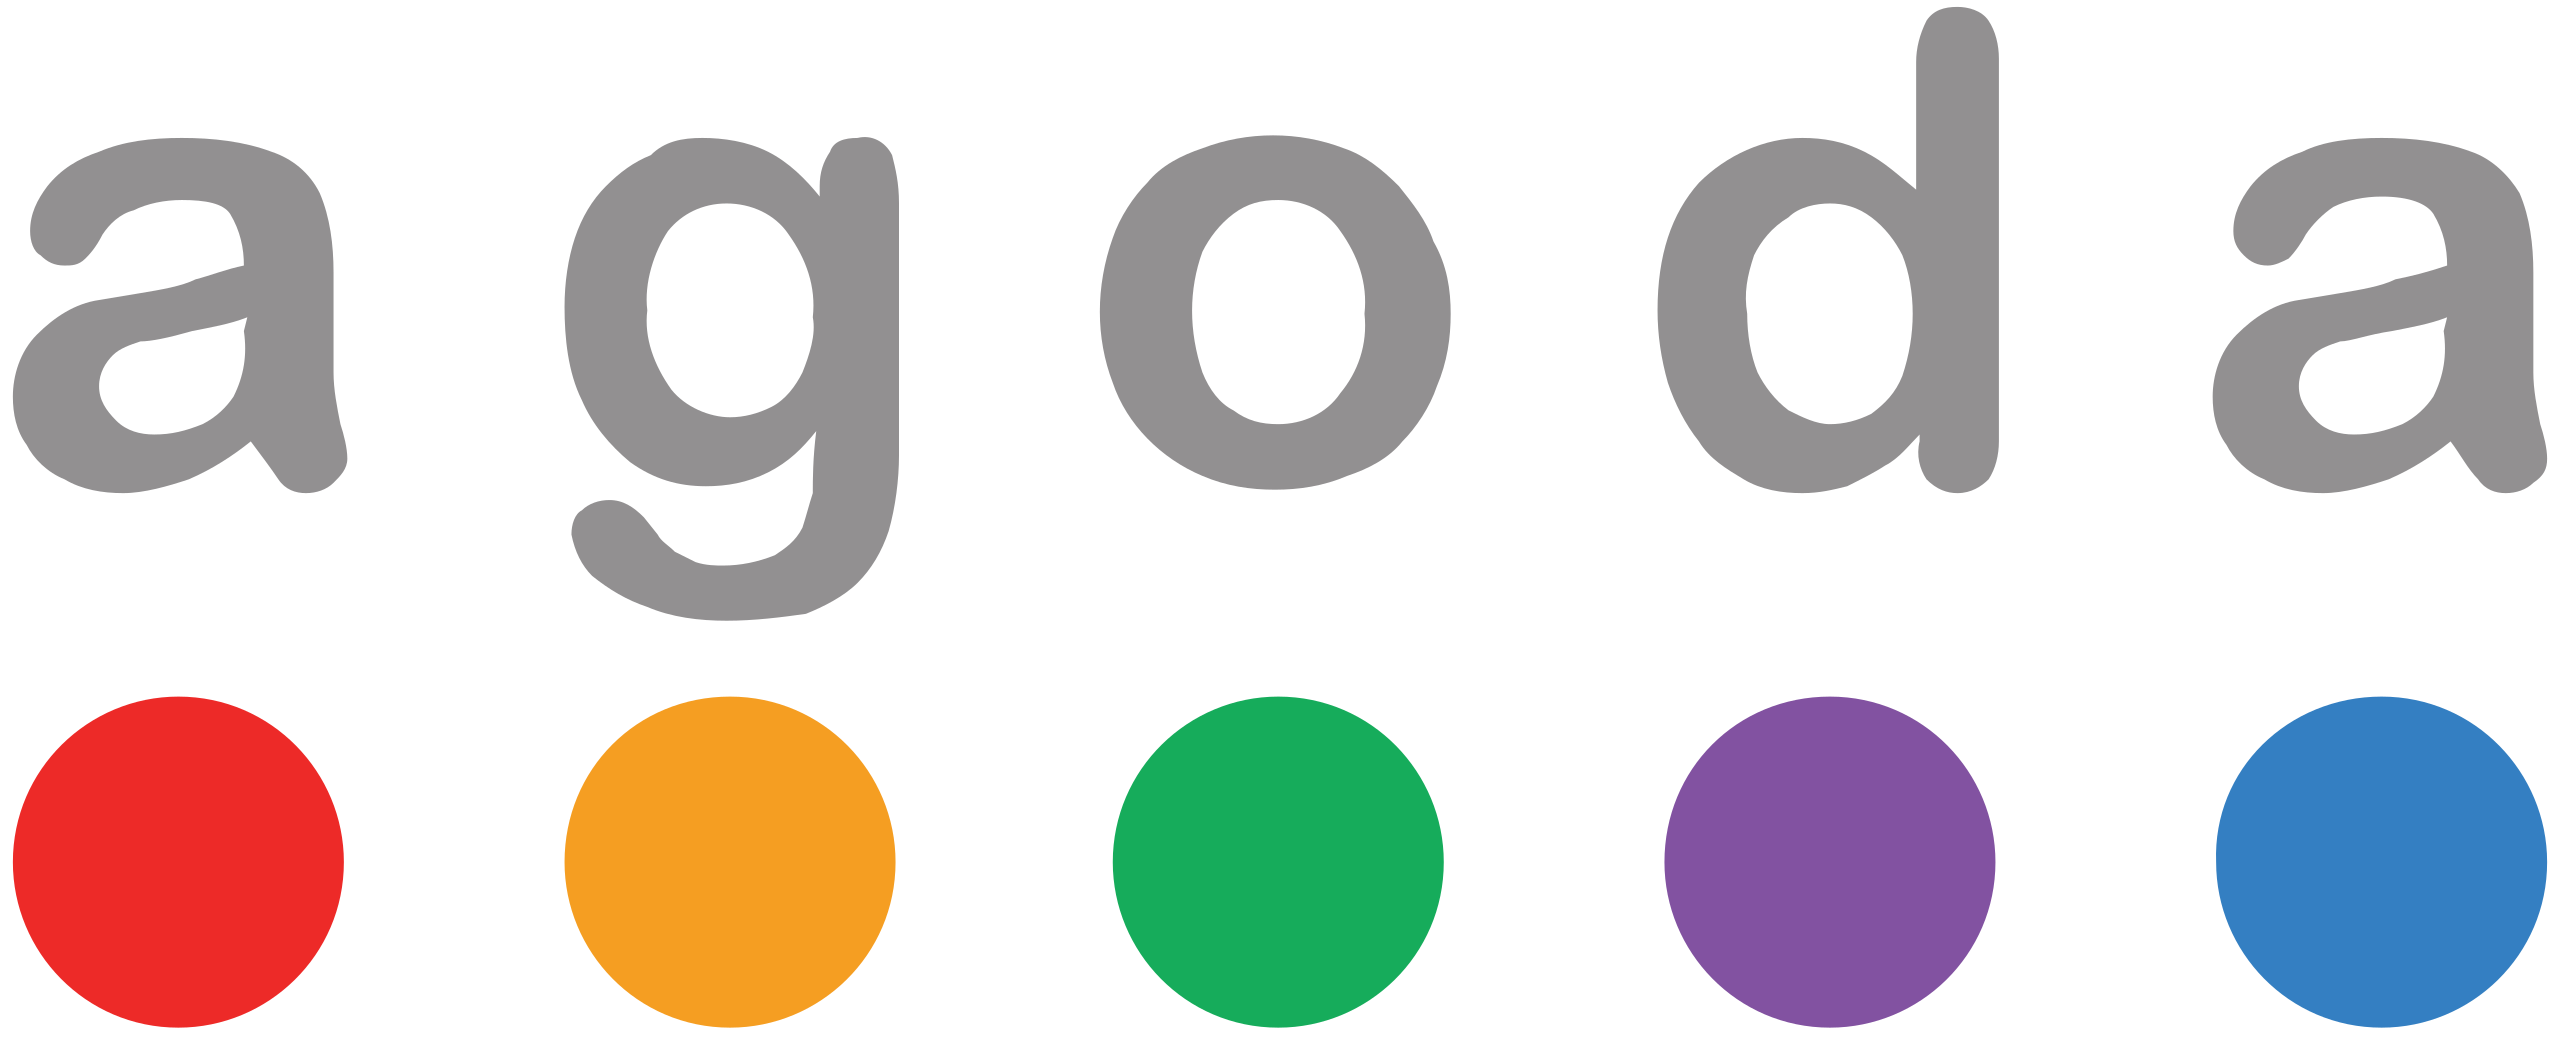 2560px-Agoda_logo.svg